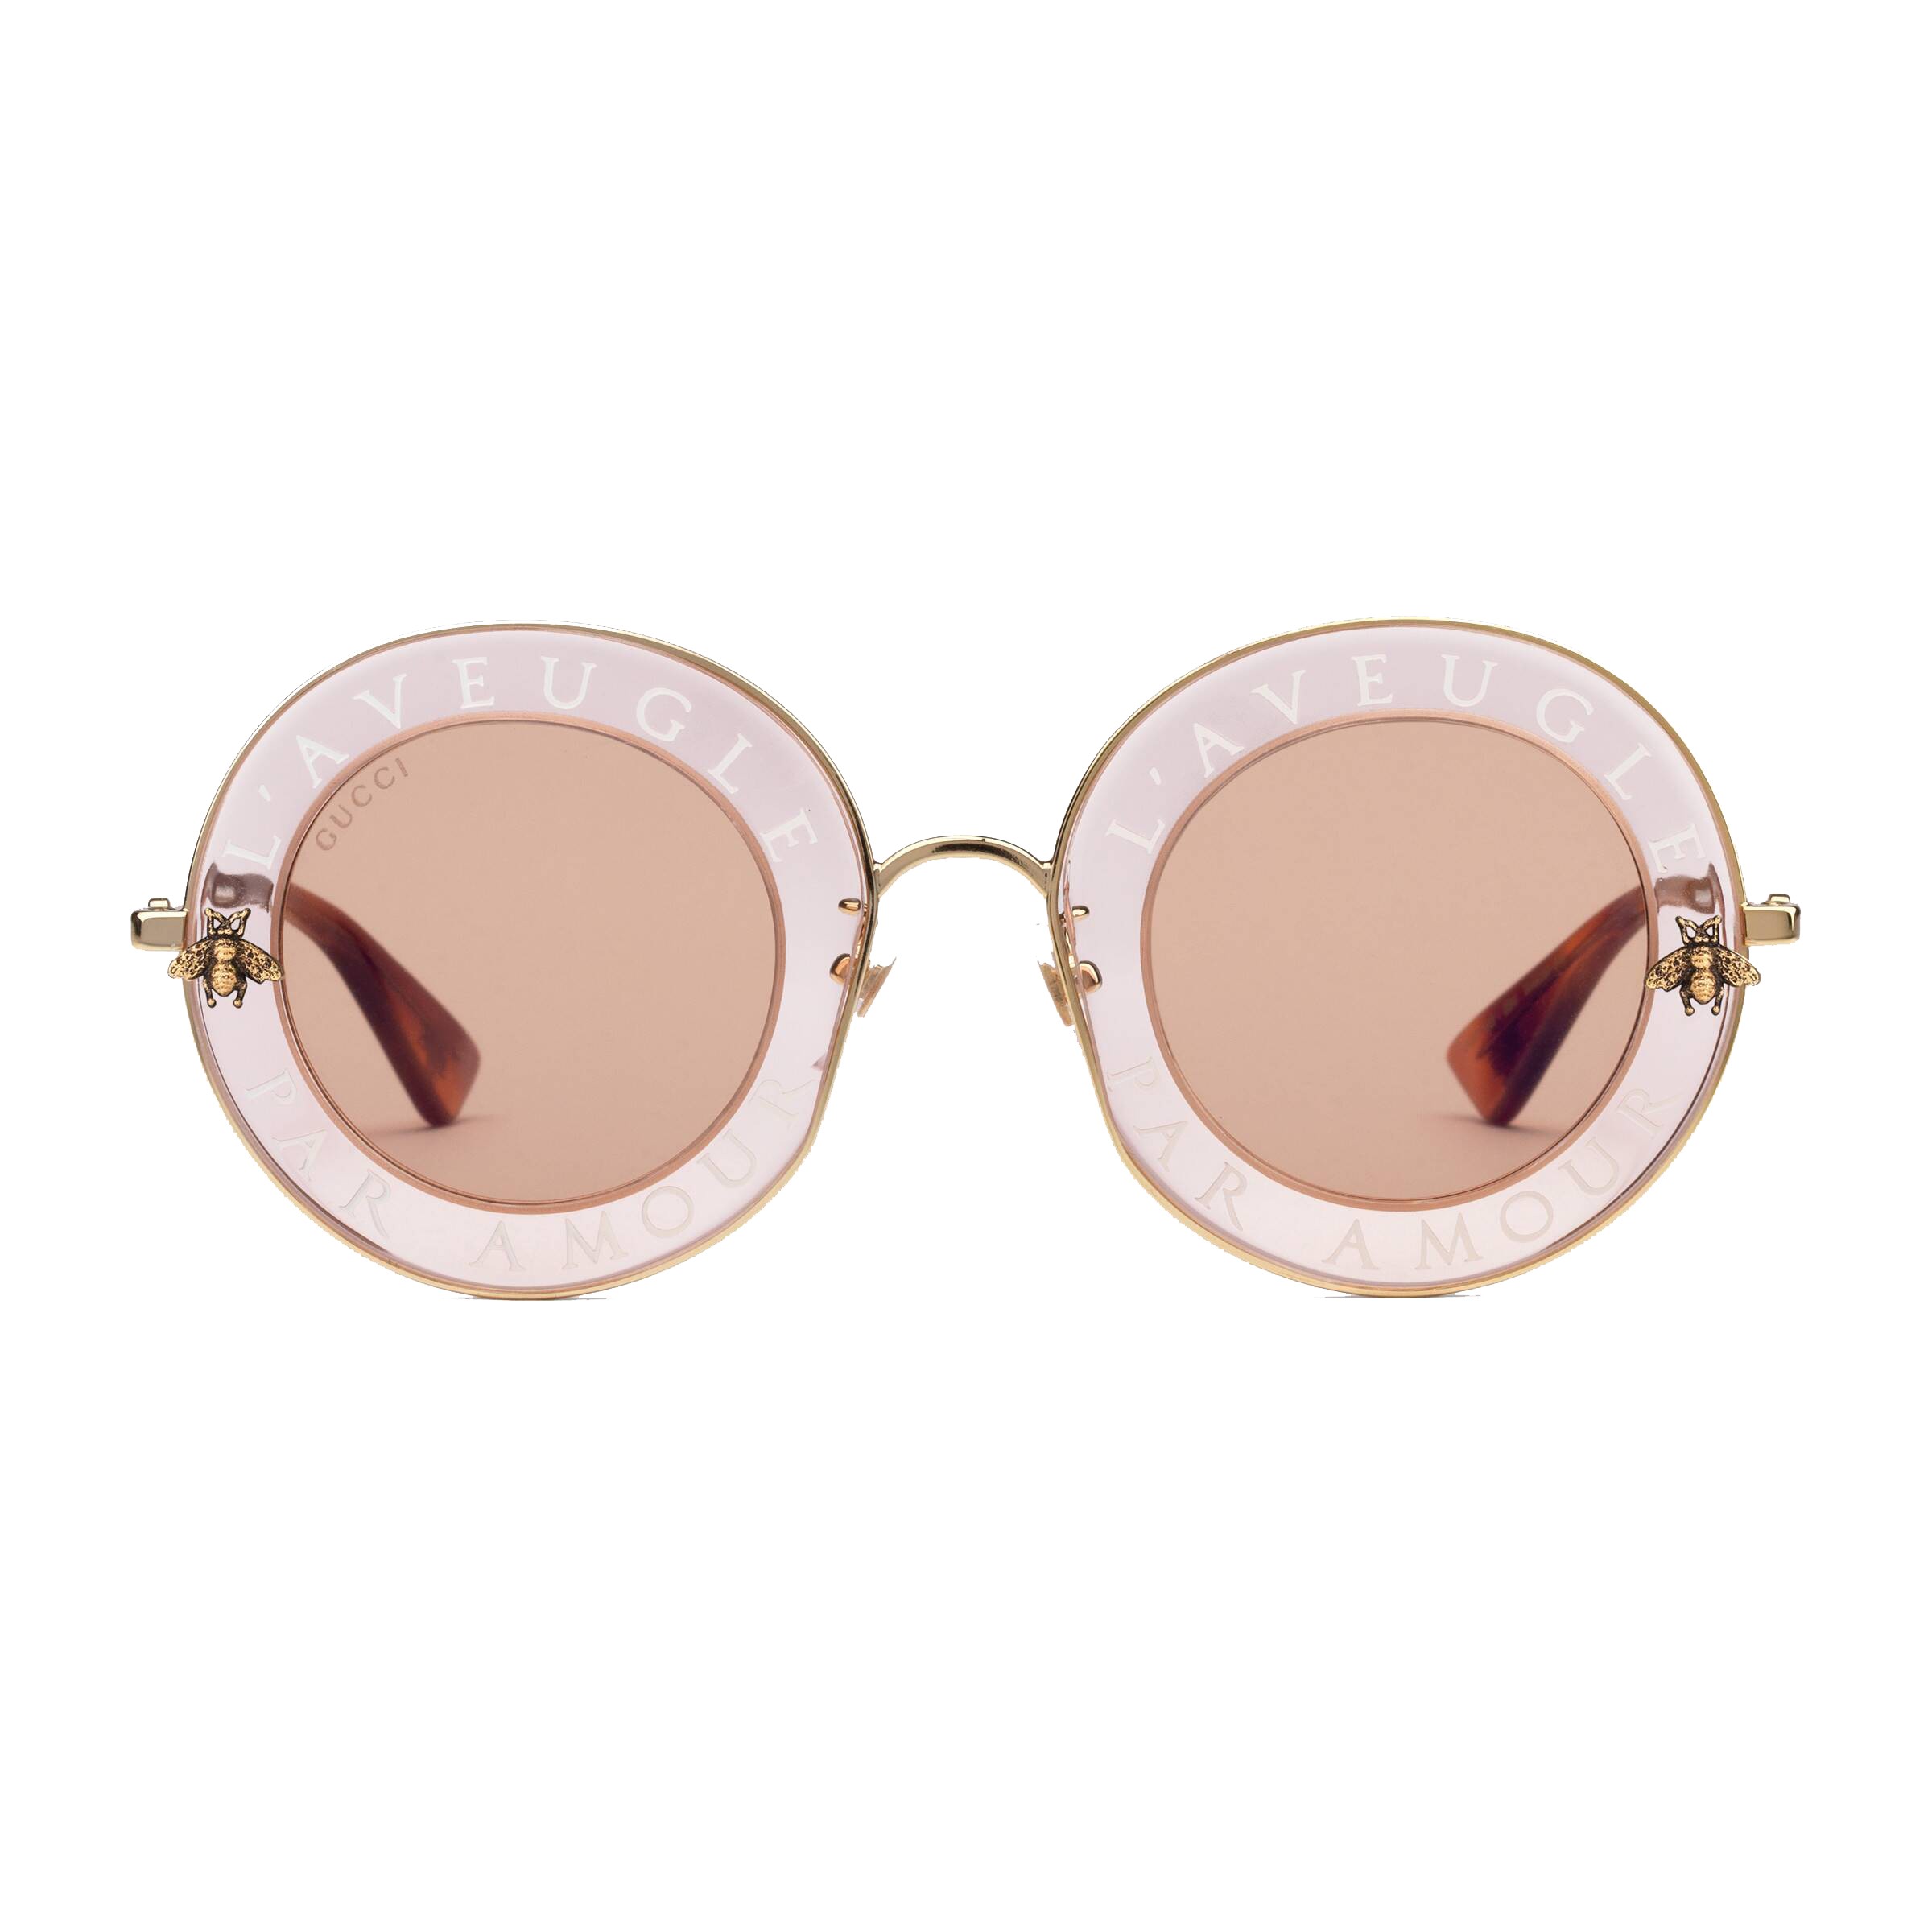 Gucci - Round Sunglasses - L'Aveugle 